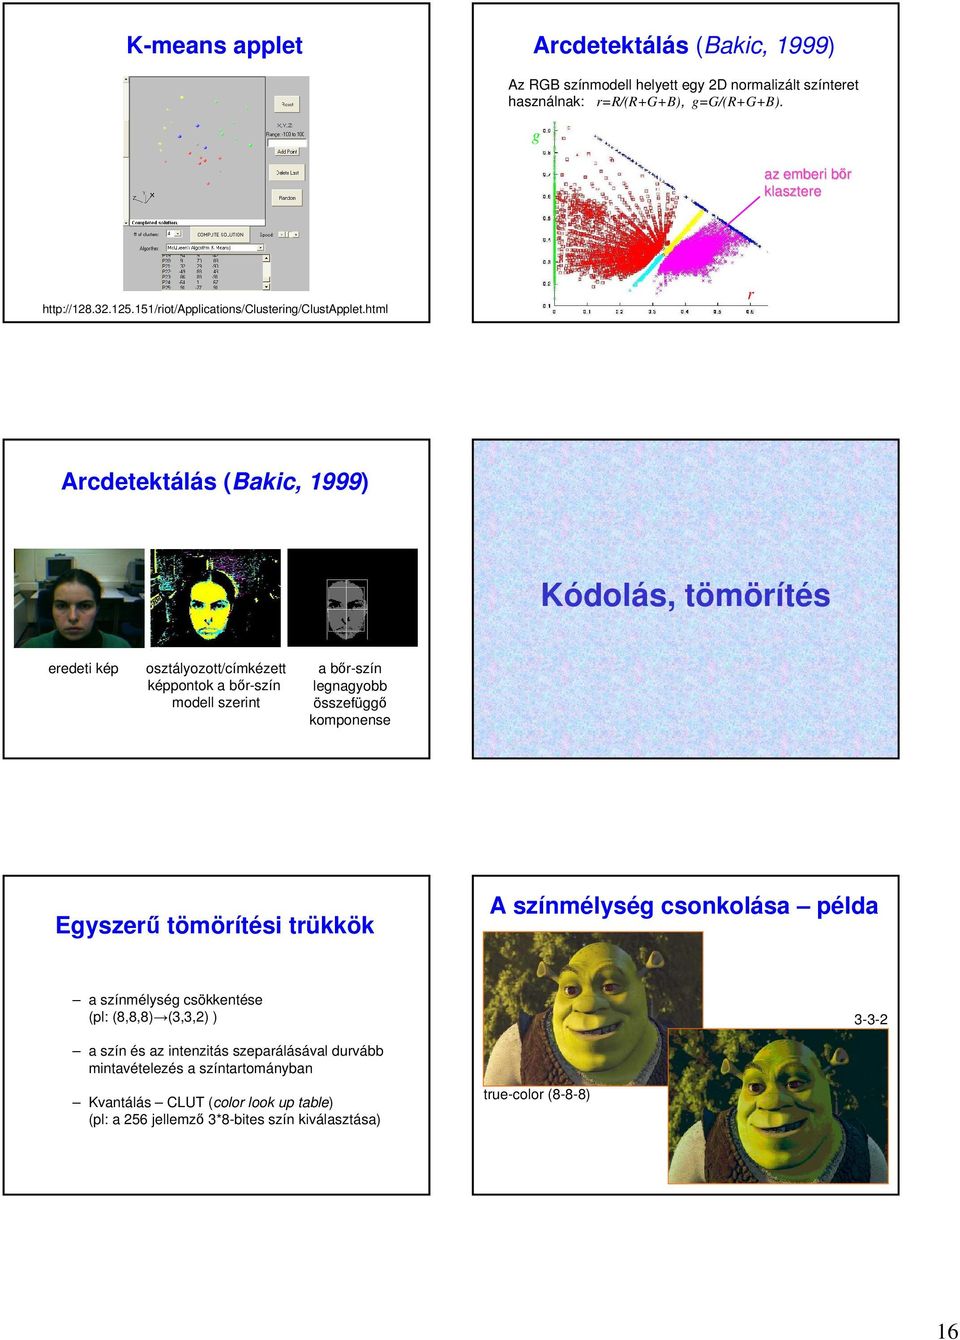 html r Arcdetektálás (Bakic, 1999) Kódolás, tömörítés eredeti kép osztályozott/címkézett képpontok a bır-szín modell szerint a bır-szín legnagyobb összefüggı komponense